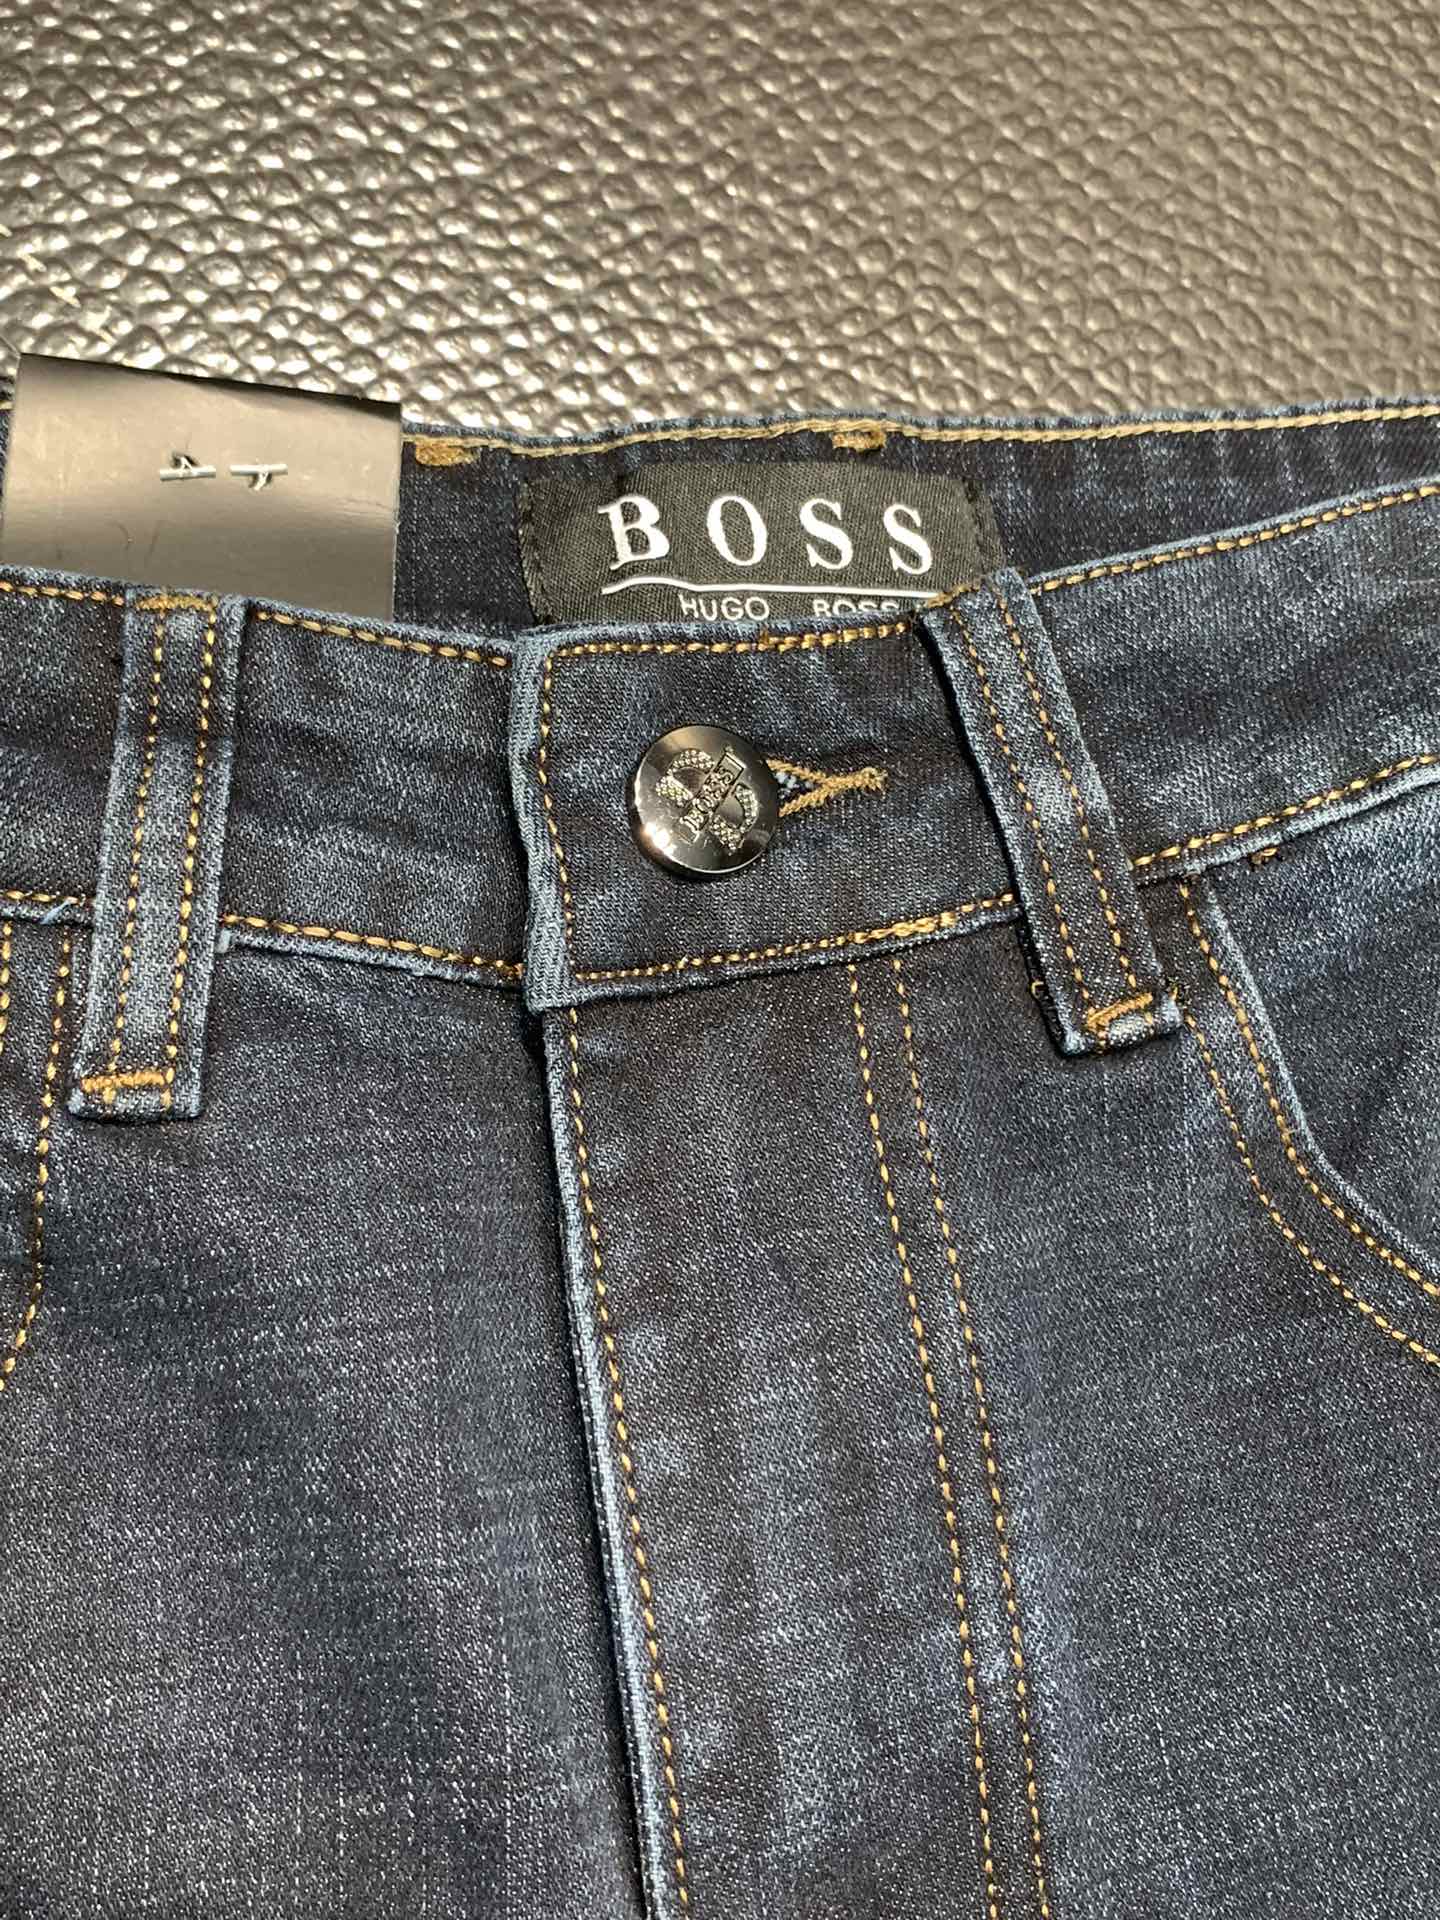 Boss独家专供新款休闲牛仔裤高端版本专柜定制面料透气舒适度高细节无可挑剔品牌元素设计理念体现高品质手感